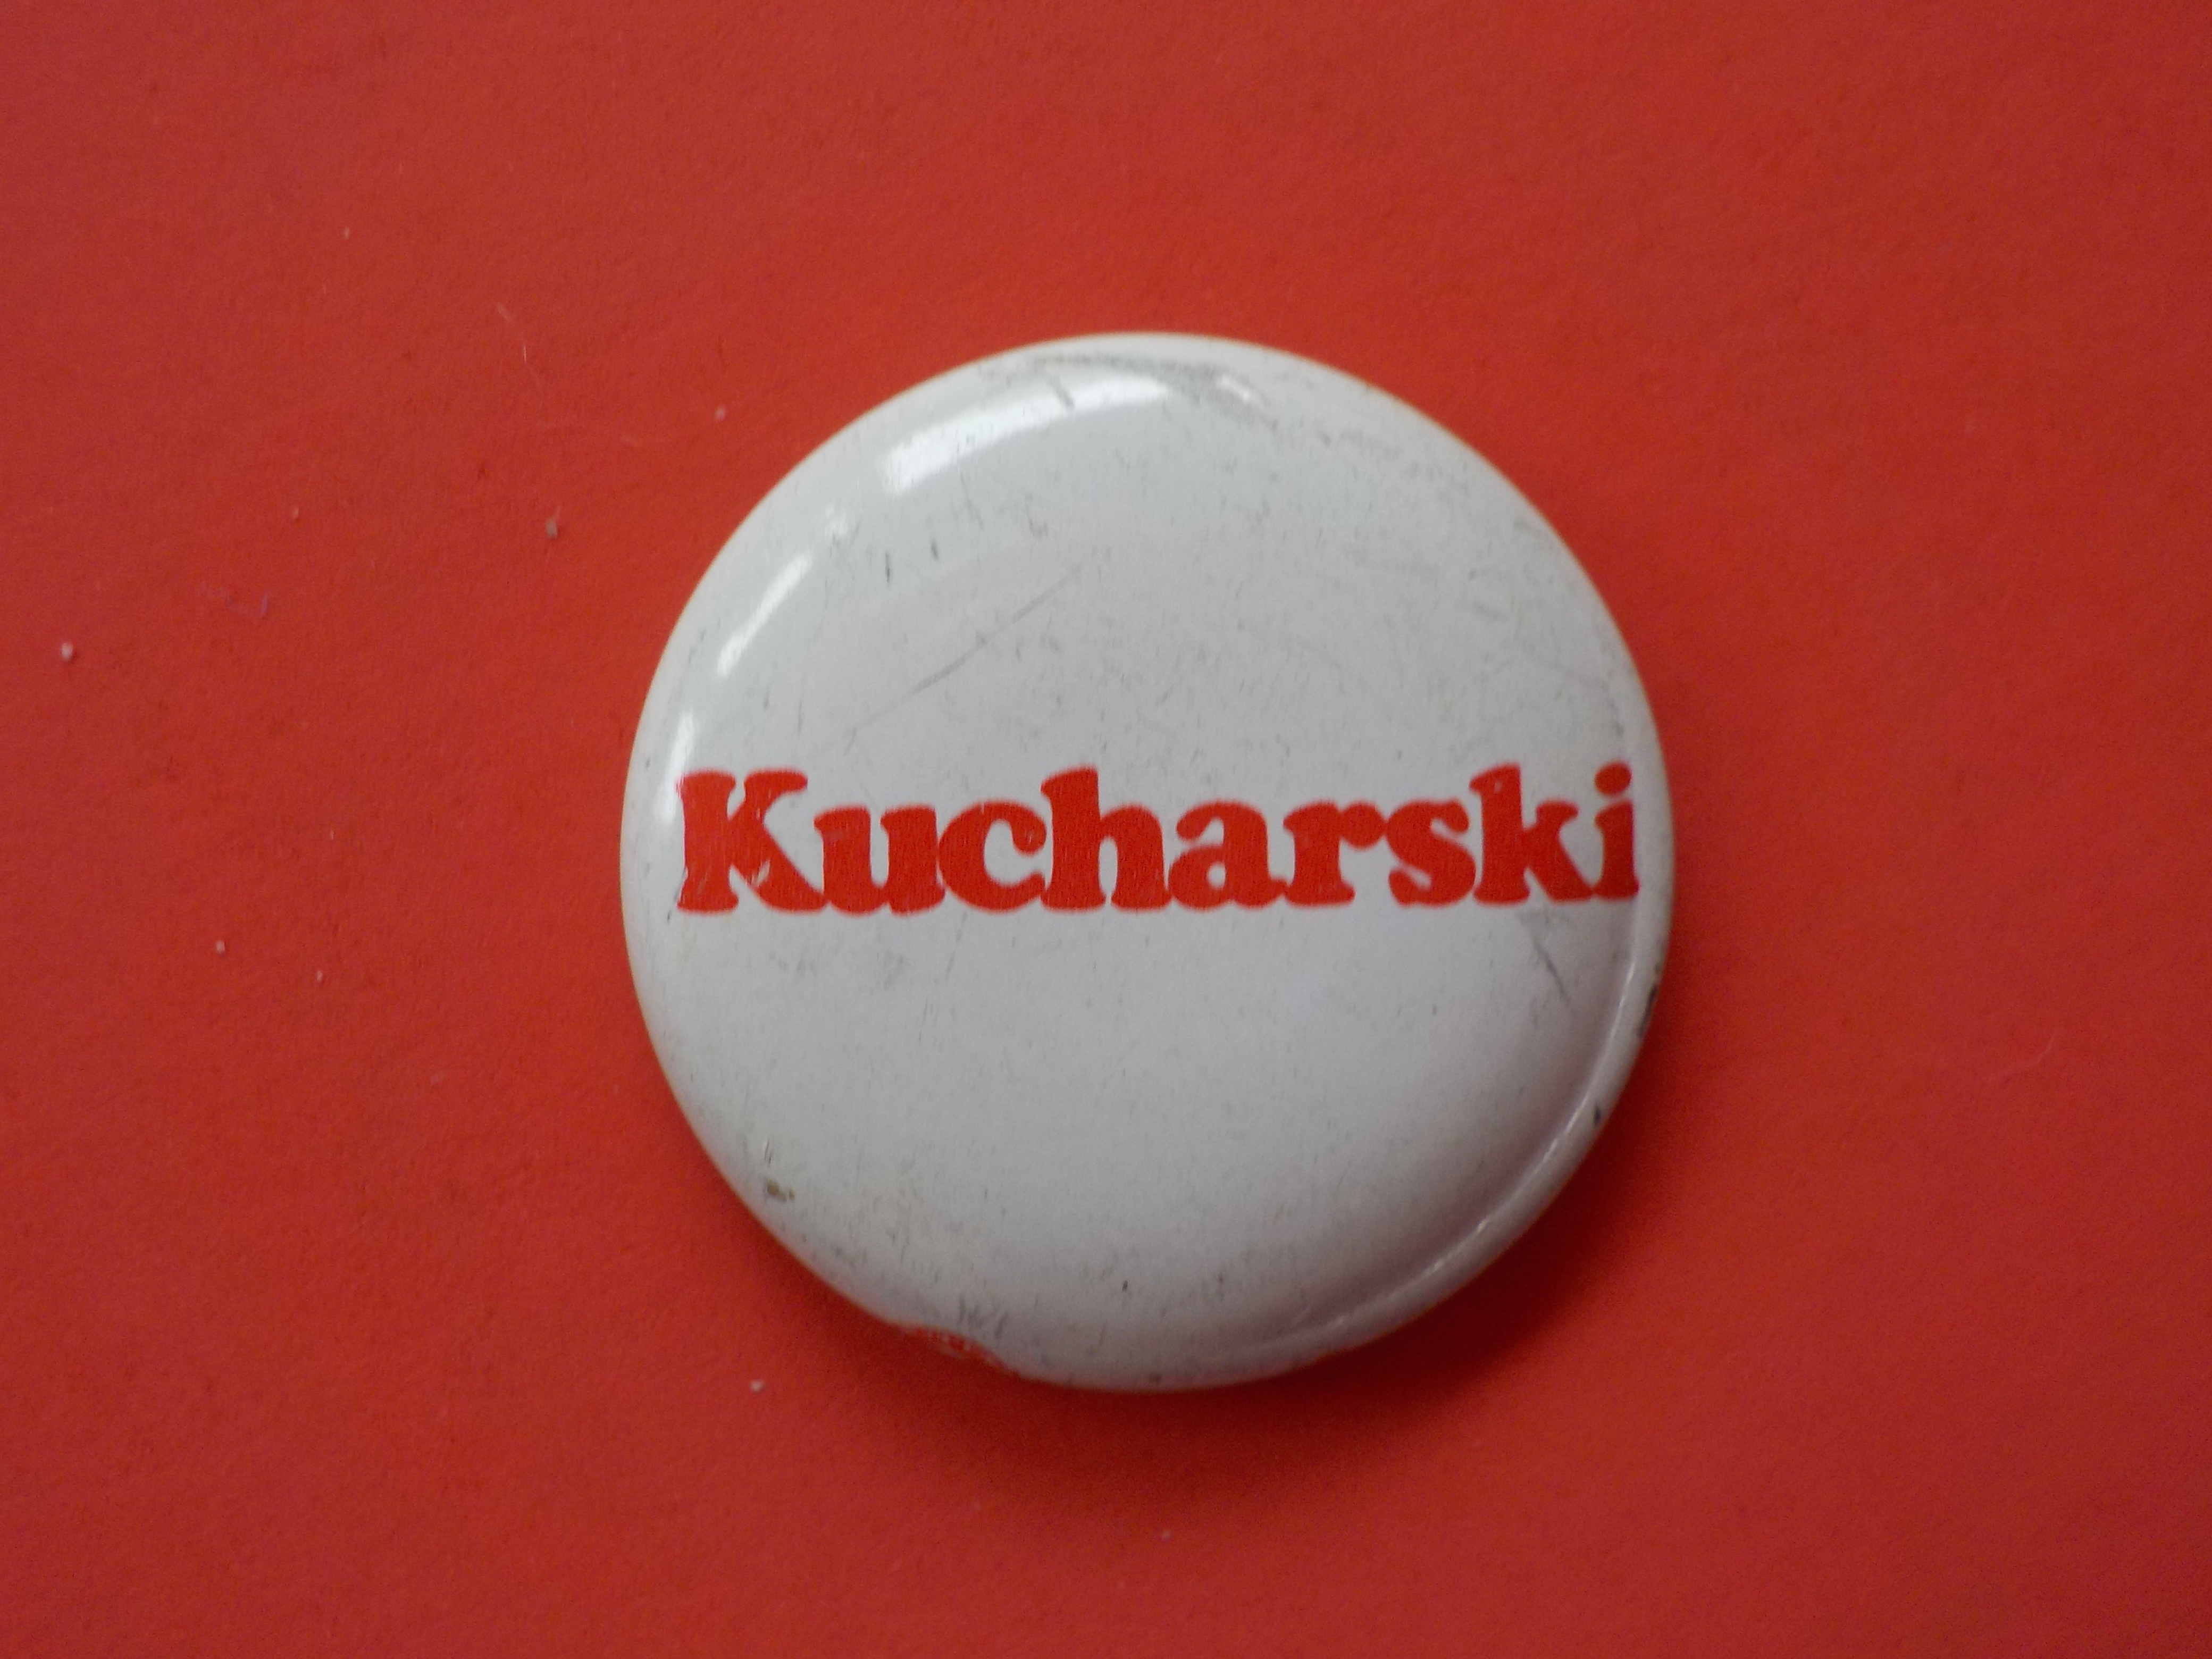 Kucharski